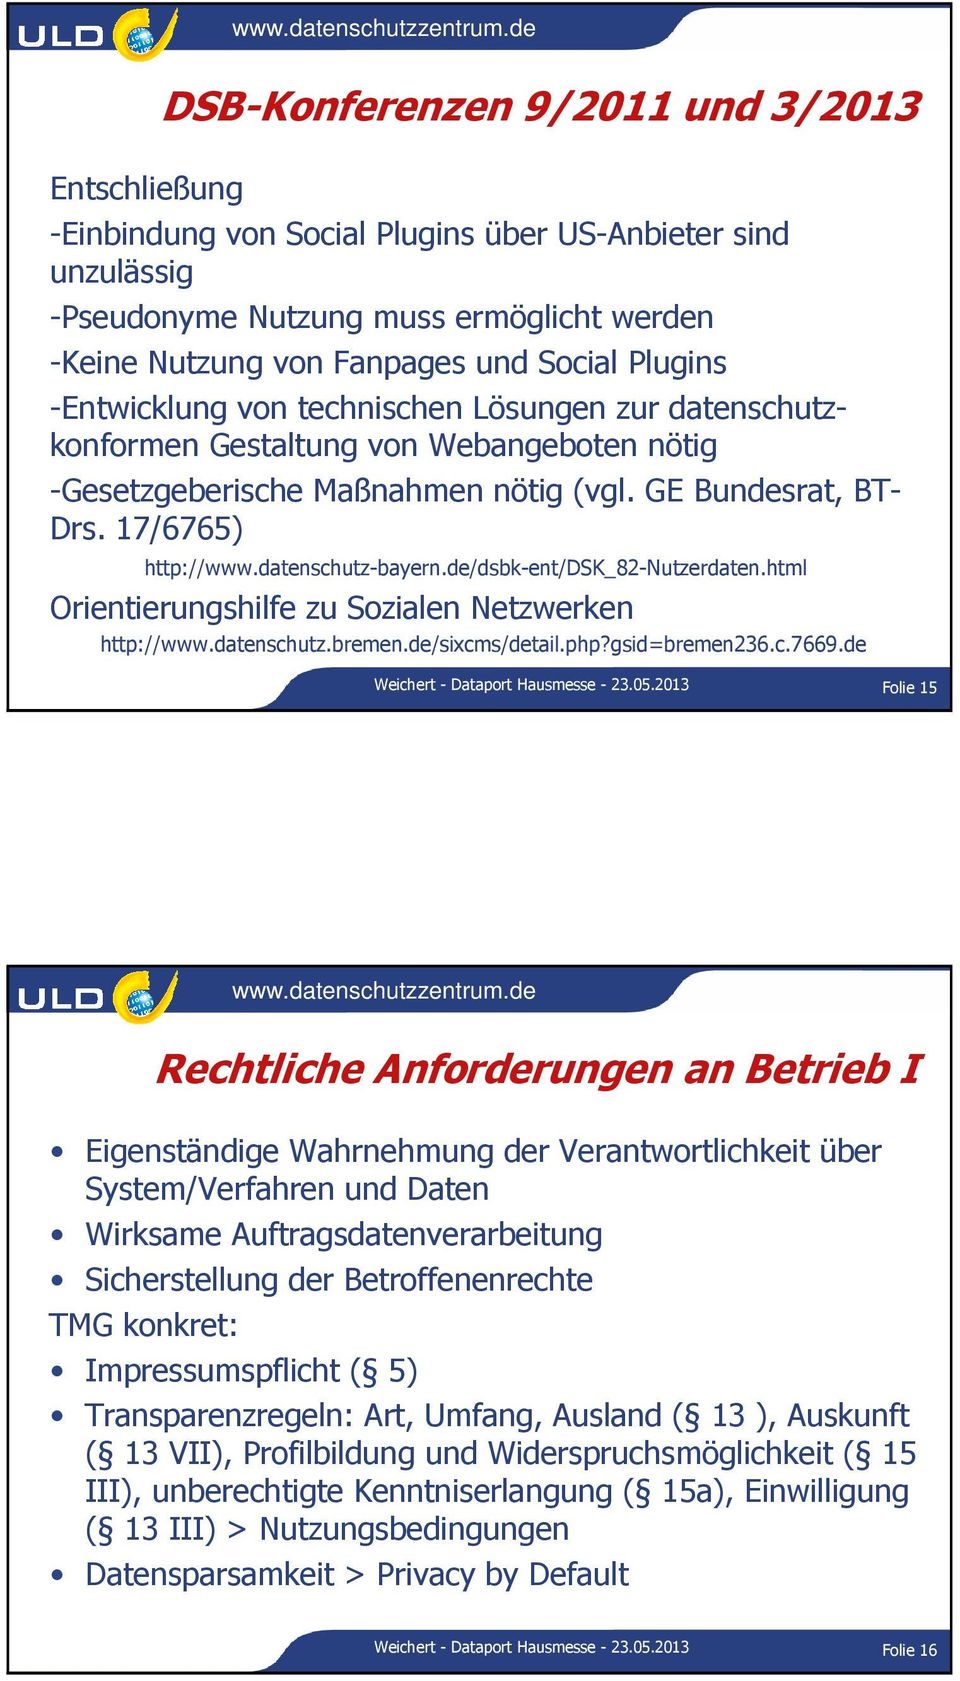 datenschutz-bayern.de/dsbk-ent/dsk_82-nutzerdaten.html Orientierungshilfe zu Sozialen Netzwerken http://www.datenschutz.bremen.de/sixcms/detail.php?gsid=bremen236.c.7669.